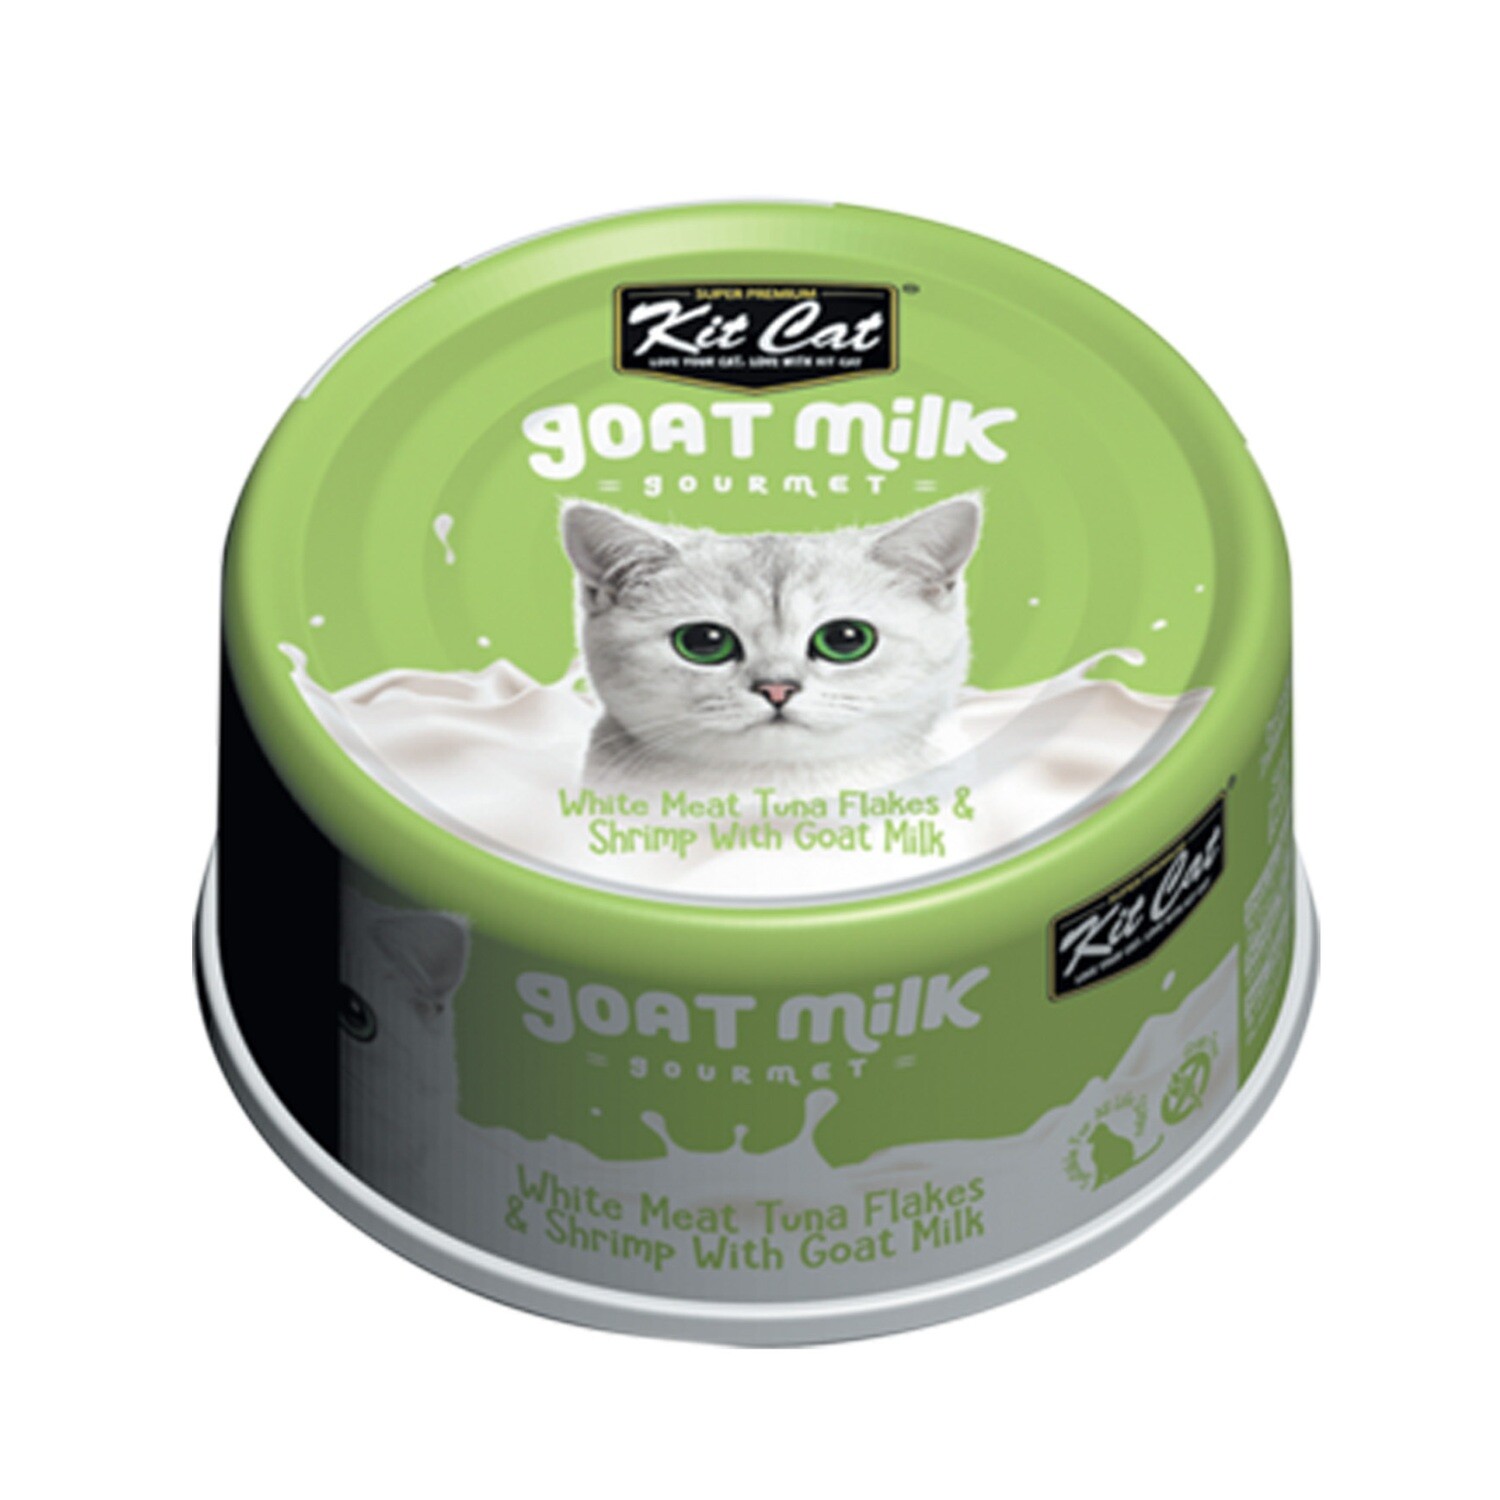 KitCat White Meat Tuna Flakes & Shrimp With Goat Milk-3oz